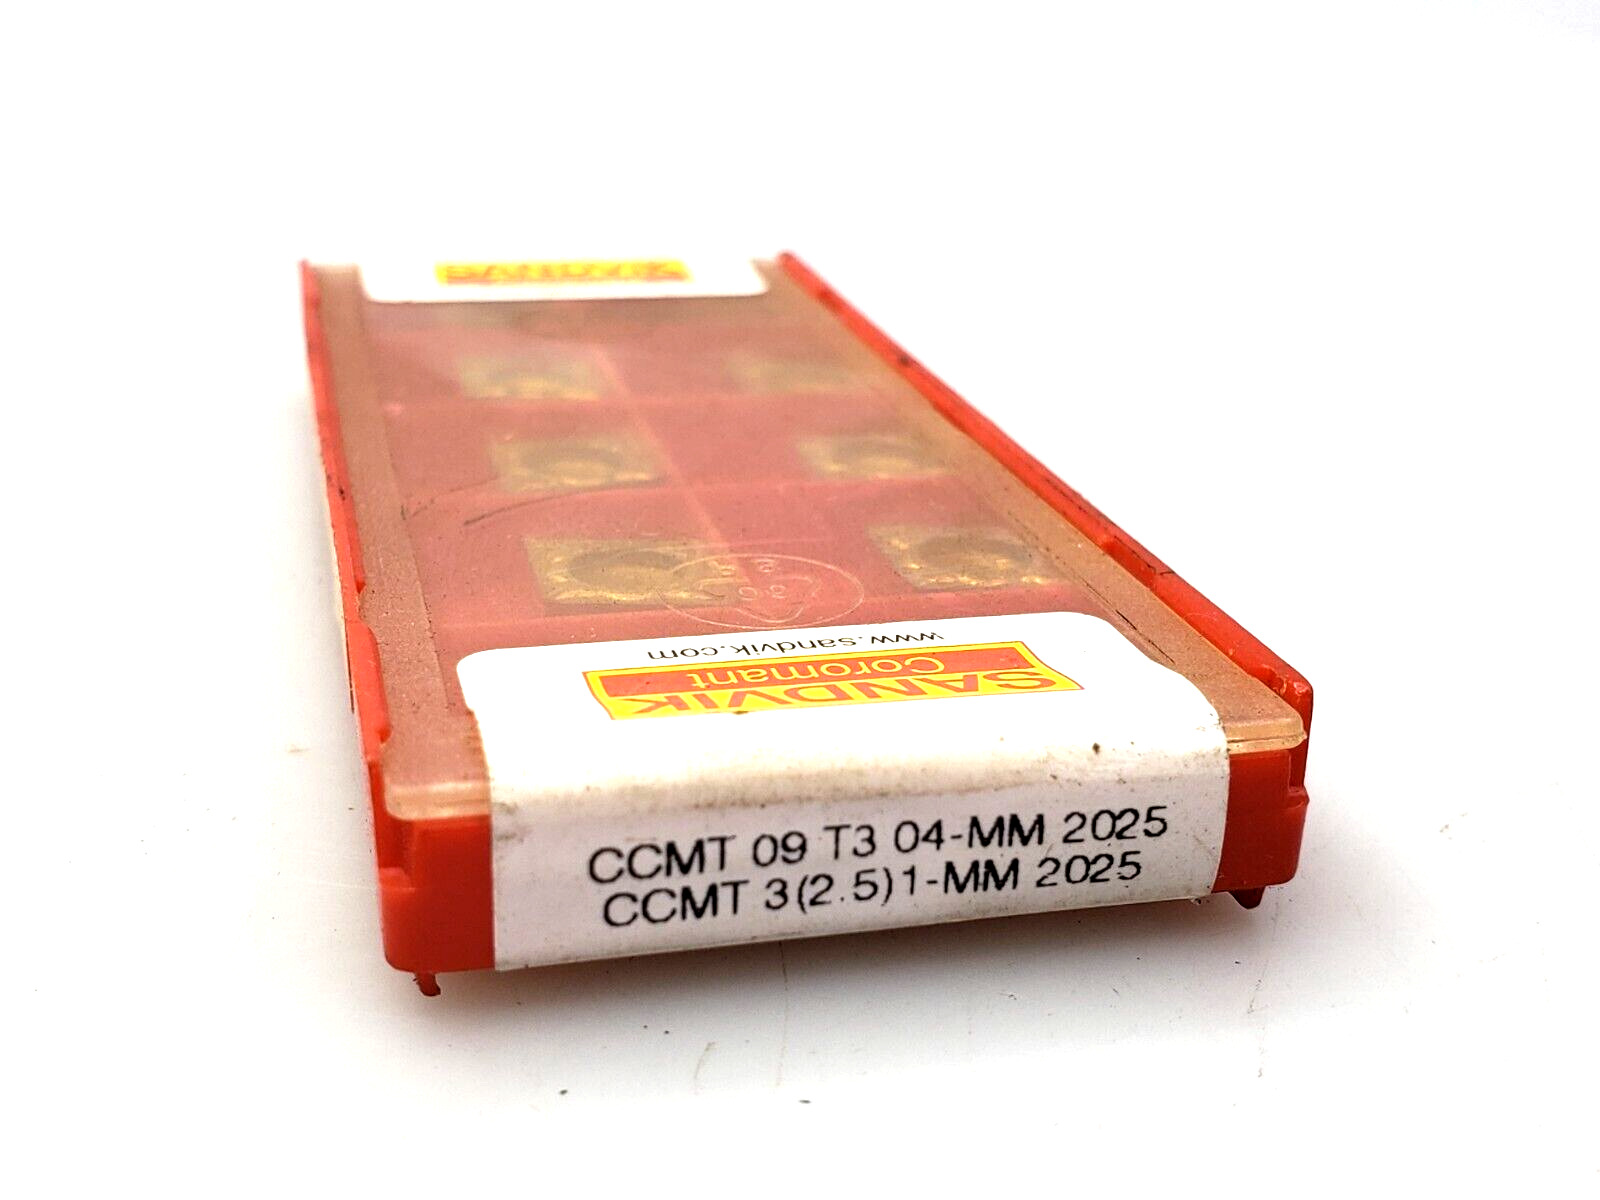 Sandvik Coromant CCMT 09 T3 04-MM 2025 CCMT 32.51-MM Carbide Inserts (Box of 10)